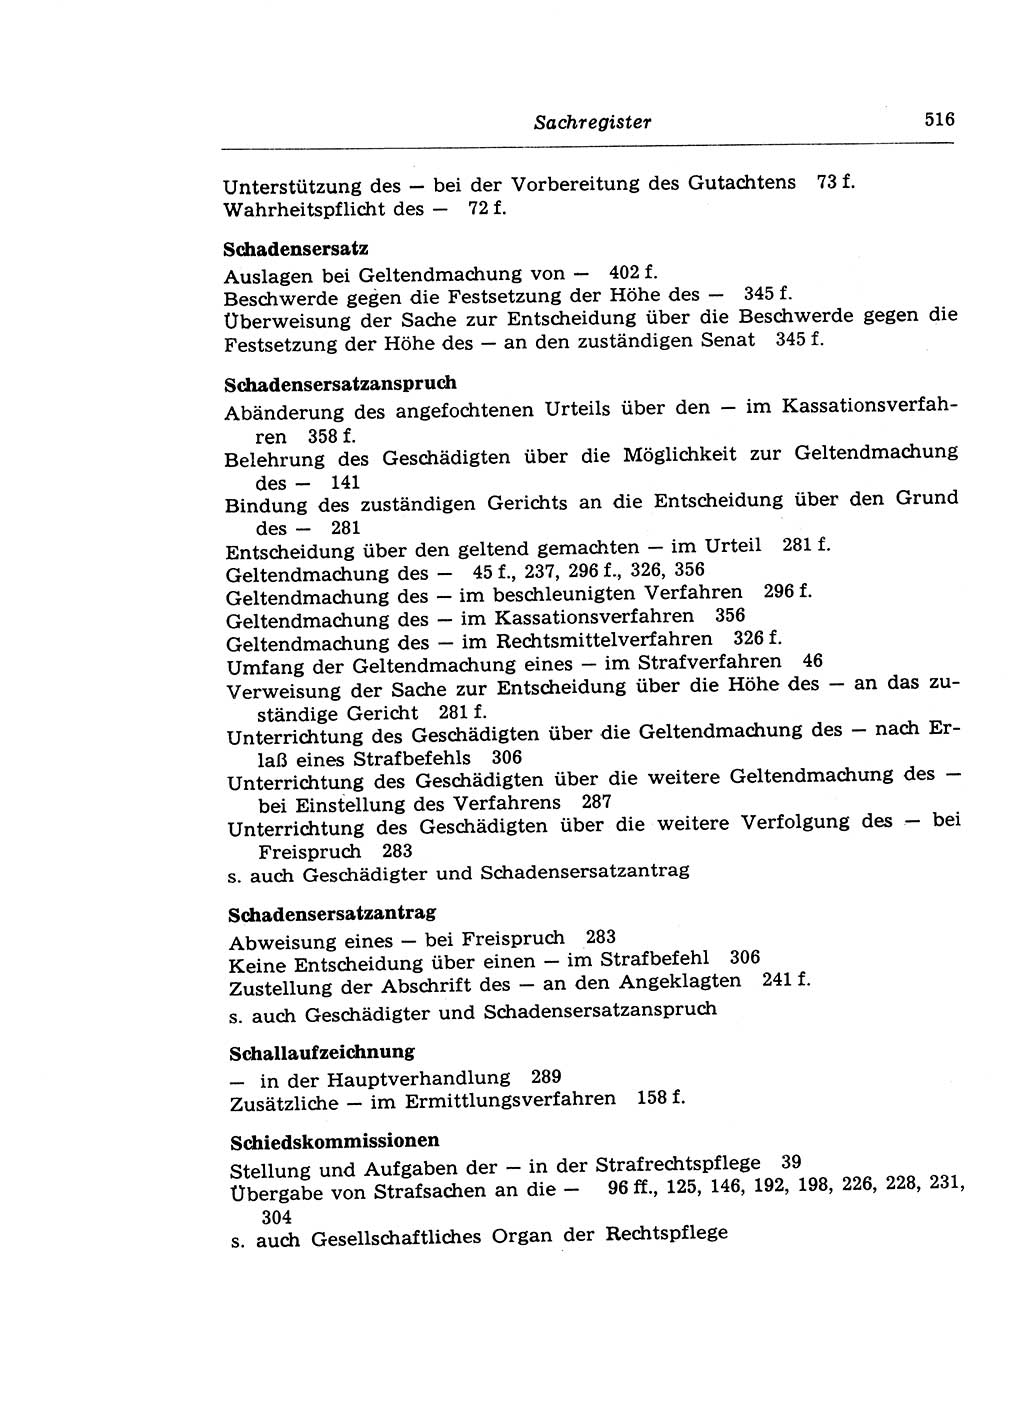 Strafprozeßrecht der DDR (Deutsche Demokratische Republik), Lehrkommentar zur Strafprozeßordnung (StPO) 1968, Seite 516 (Strafprozeßr. DDR Lehrkomm. StPO 19688, S. 516)